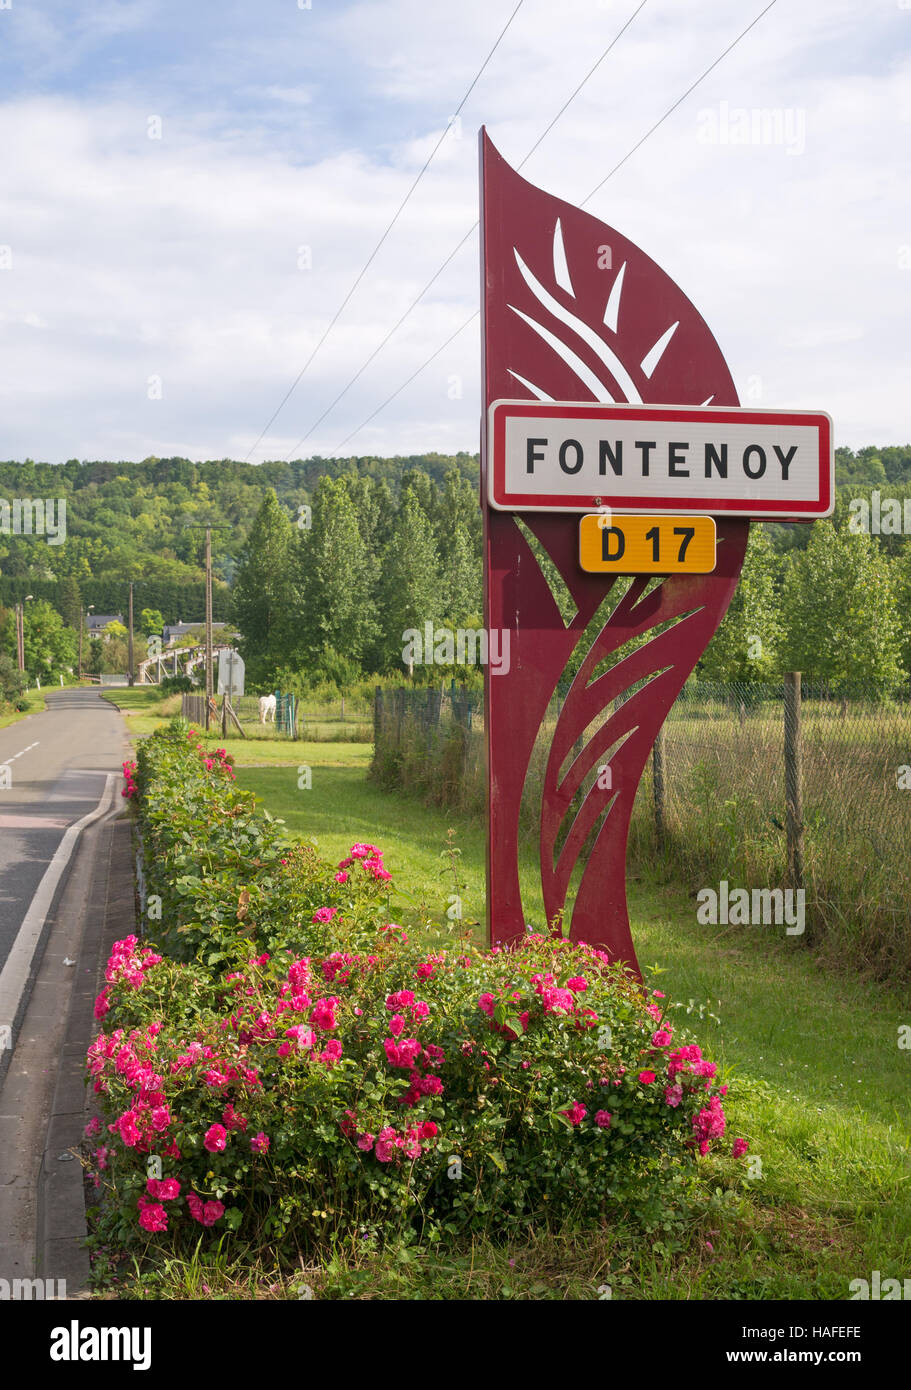 Raod sign for the village of Fontenoy of the D17, département de l'Aisne,  Hauts-de-France, France, Europe Stock Photo